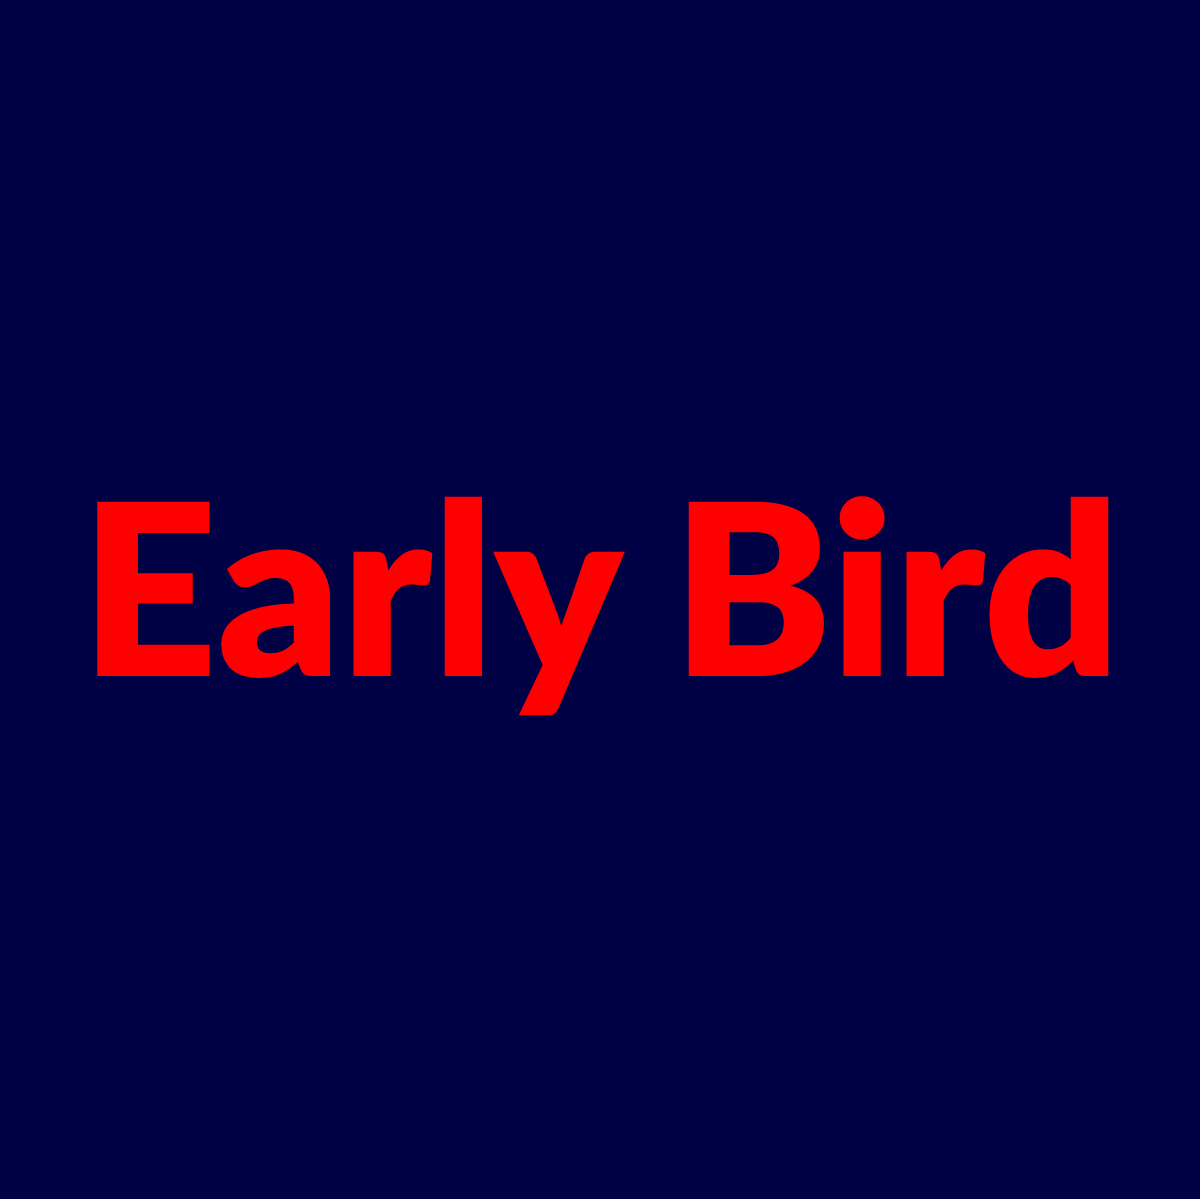 Earlybird kuponer och kampagnekoder